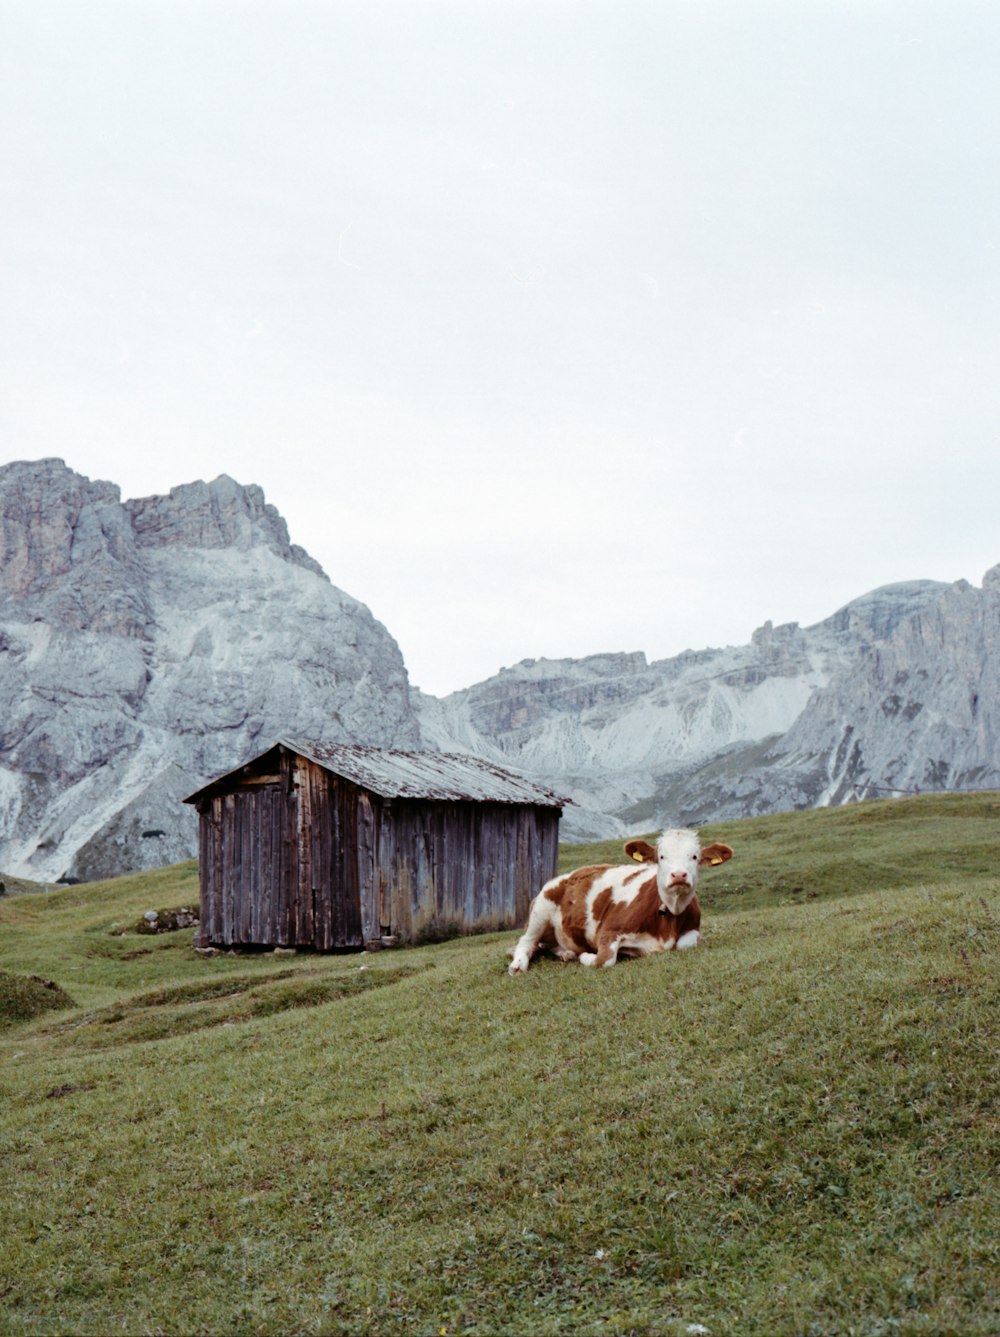 昼間、茶色の木造住宅の近くの緑の芝生に茶色と白の牛